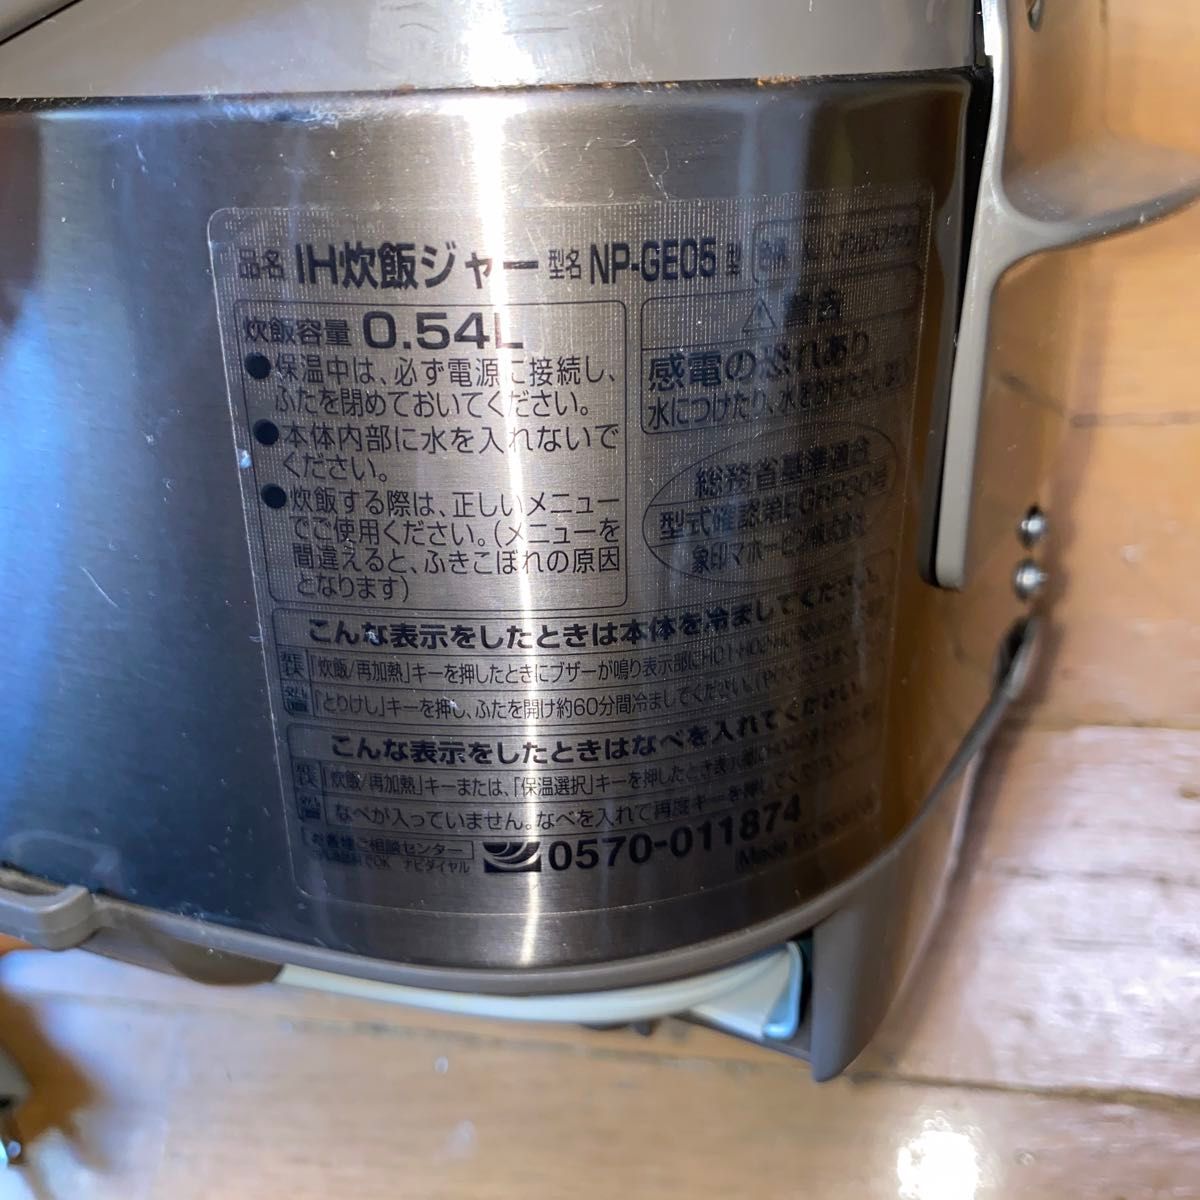 象印 NP-GE05-XJ ZOZIRUSHI ステンレスブラウン 炊飯器 IH炊飯ジャー 3合炊き